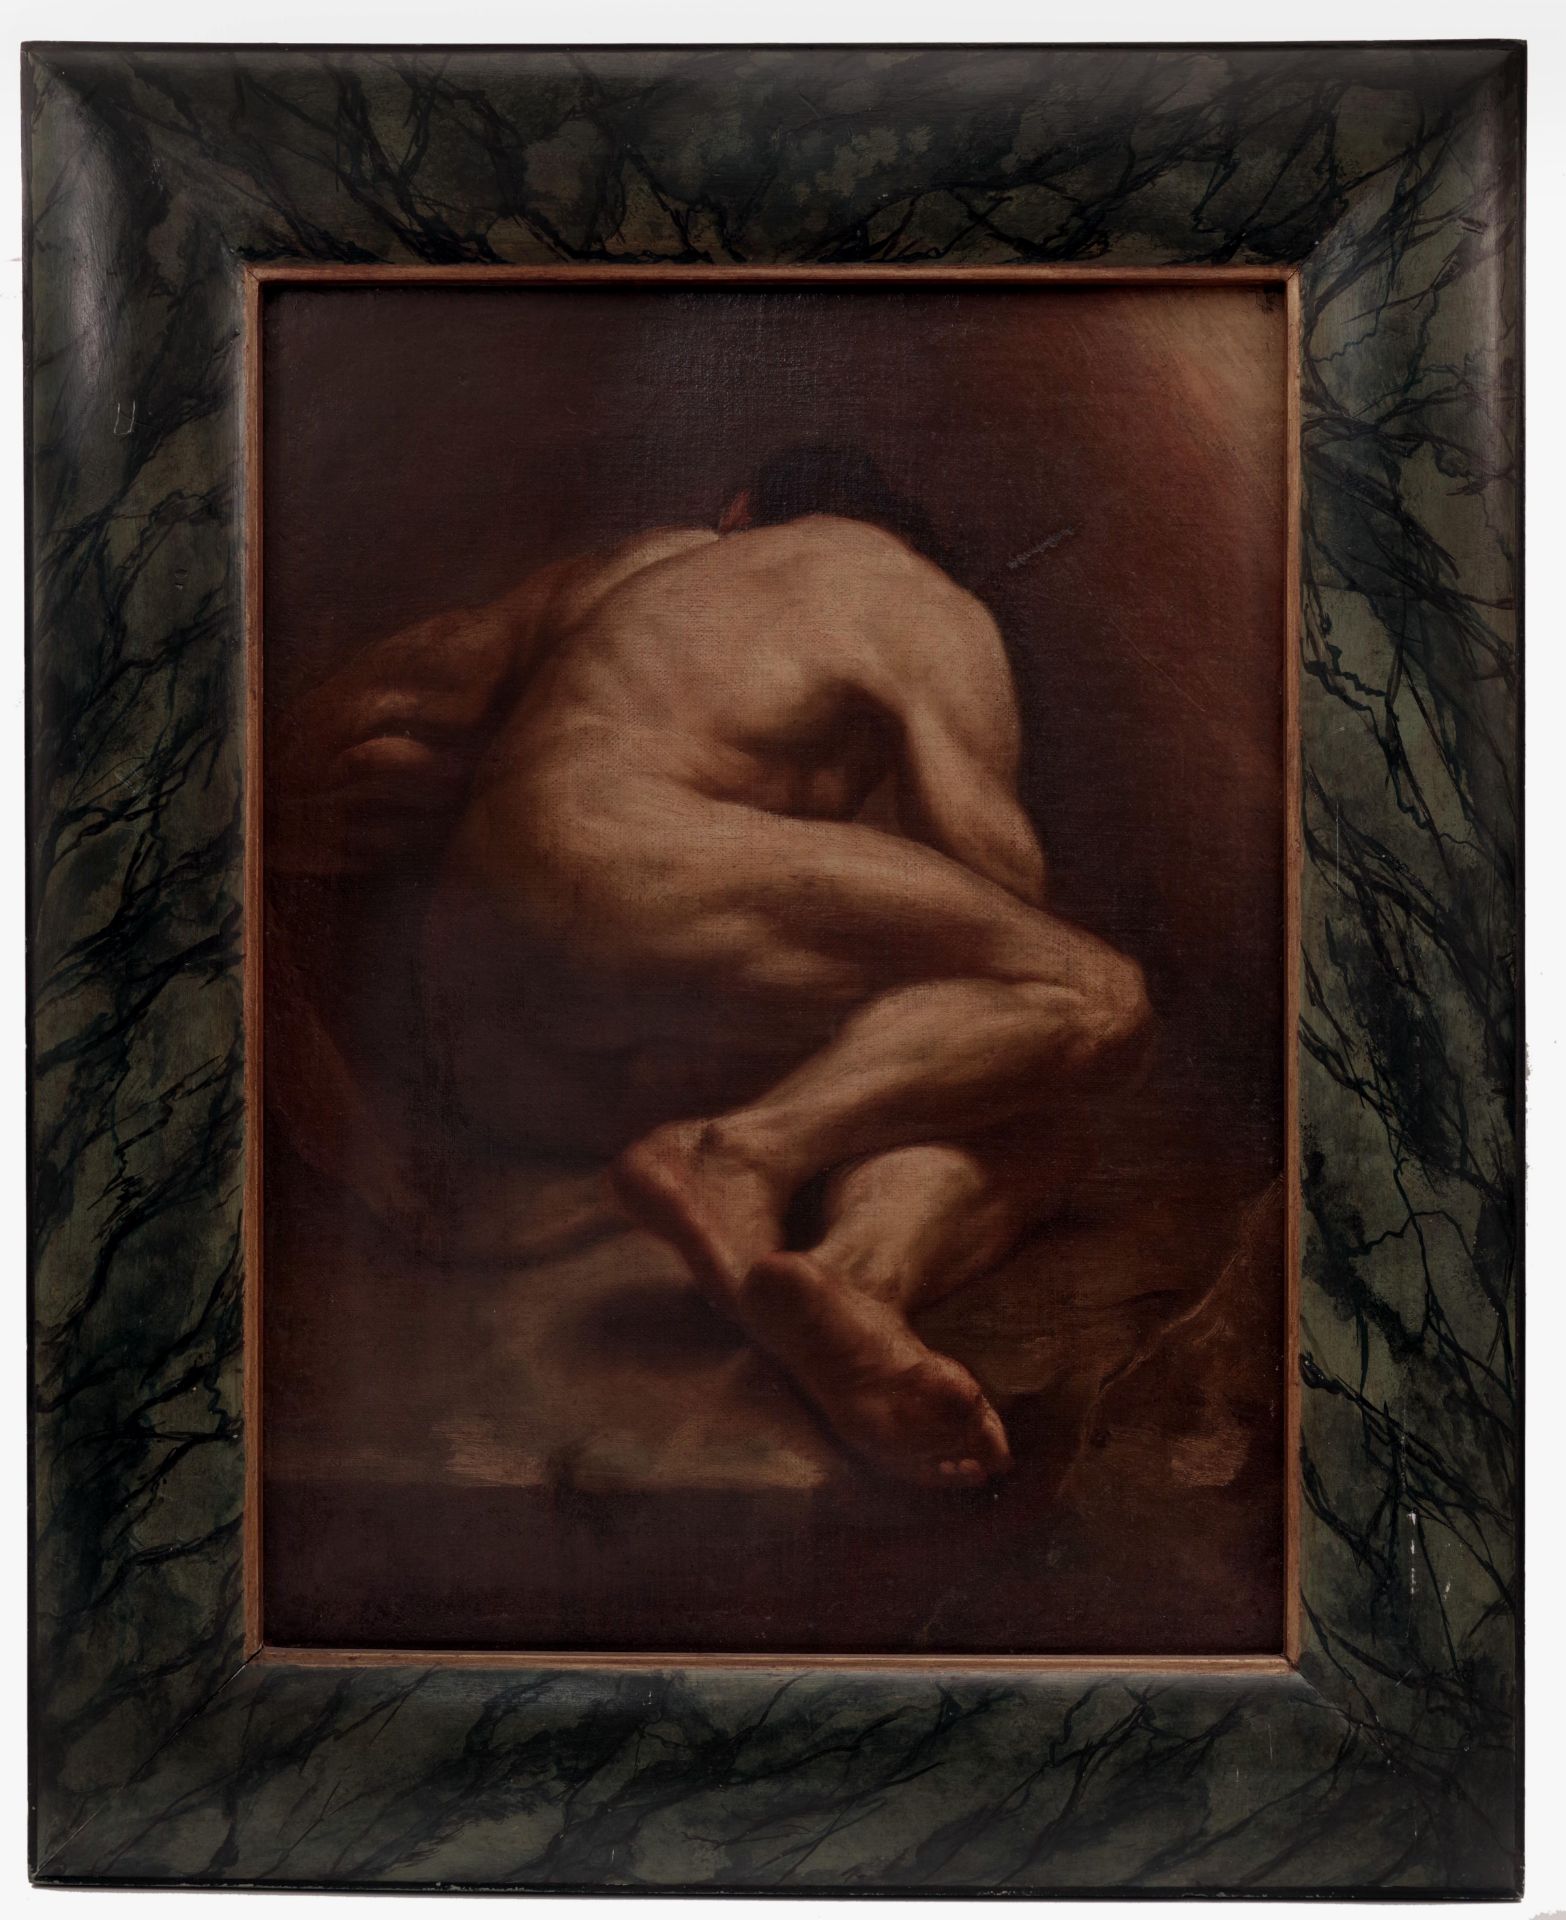 Nude male figure, Nicolai Abraham Abildgaard (circle)